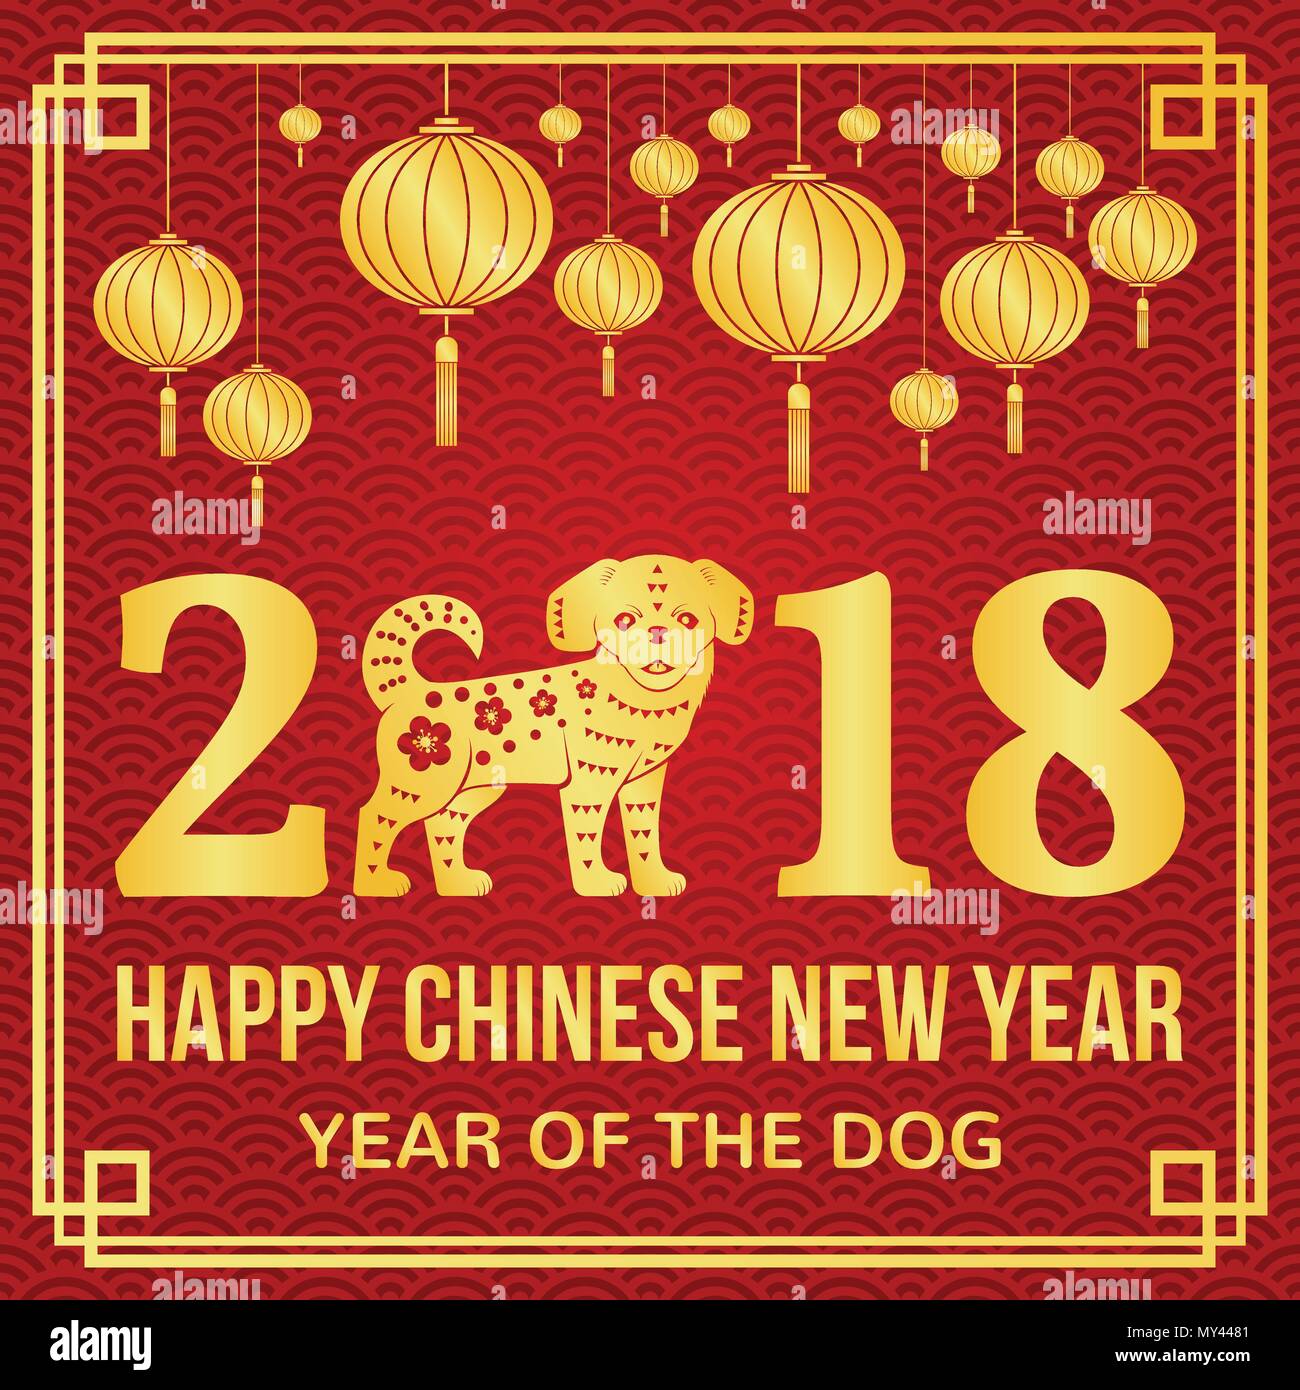 Happy Chinese New Year 2018 Typografie mit Gold Hund und Lampions. Vector Illustration. Für Grußkarten, Flyer, Poster, Banner oder auf der Website te Stock Vektor